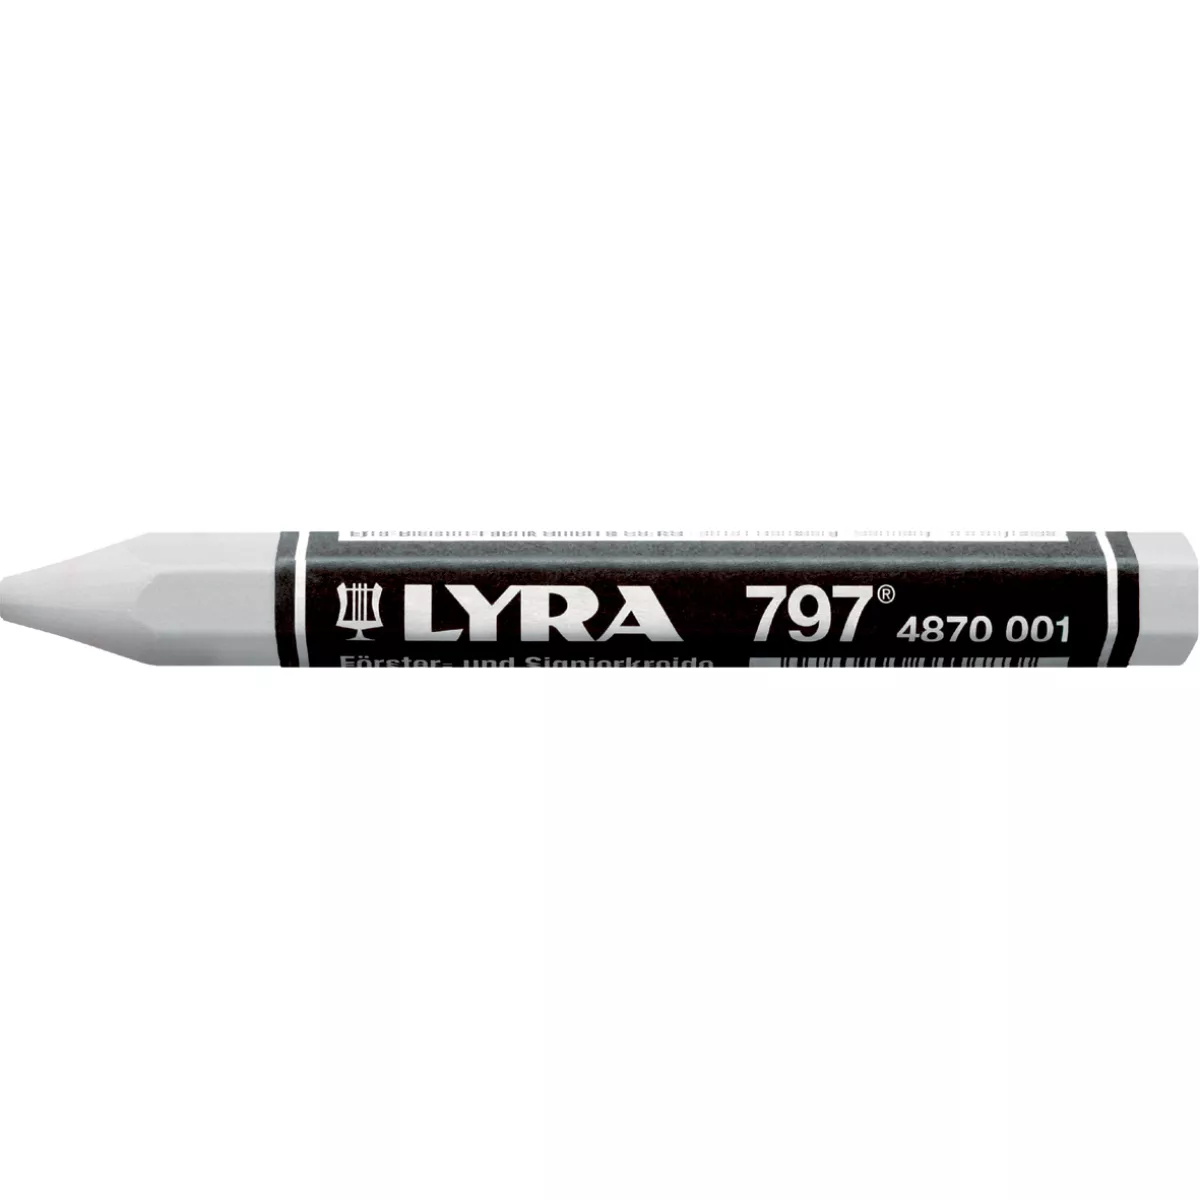 #3 - Lyra oliekridt (797) m/papir 12 stk (Rød)